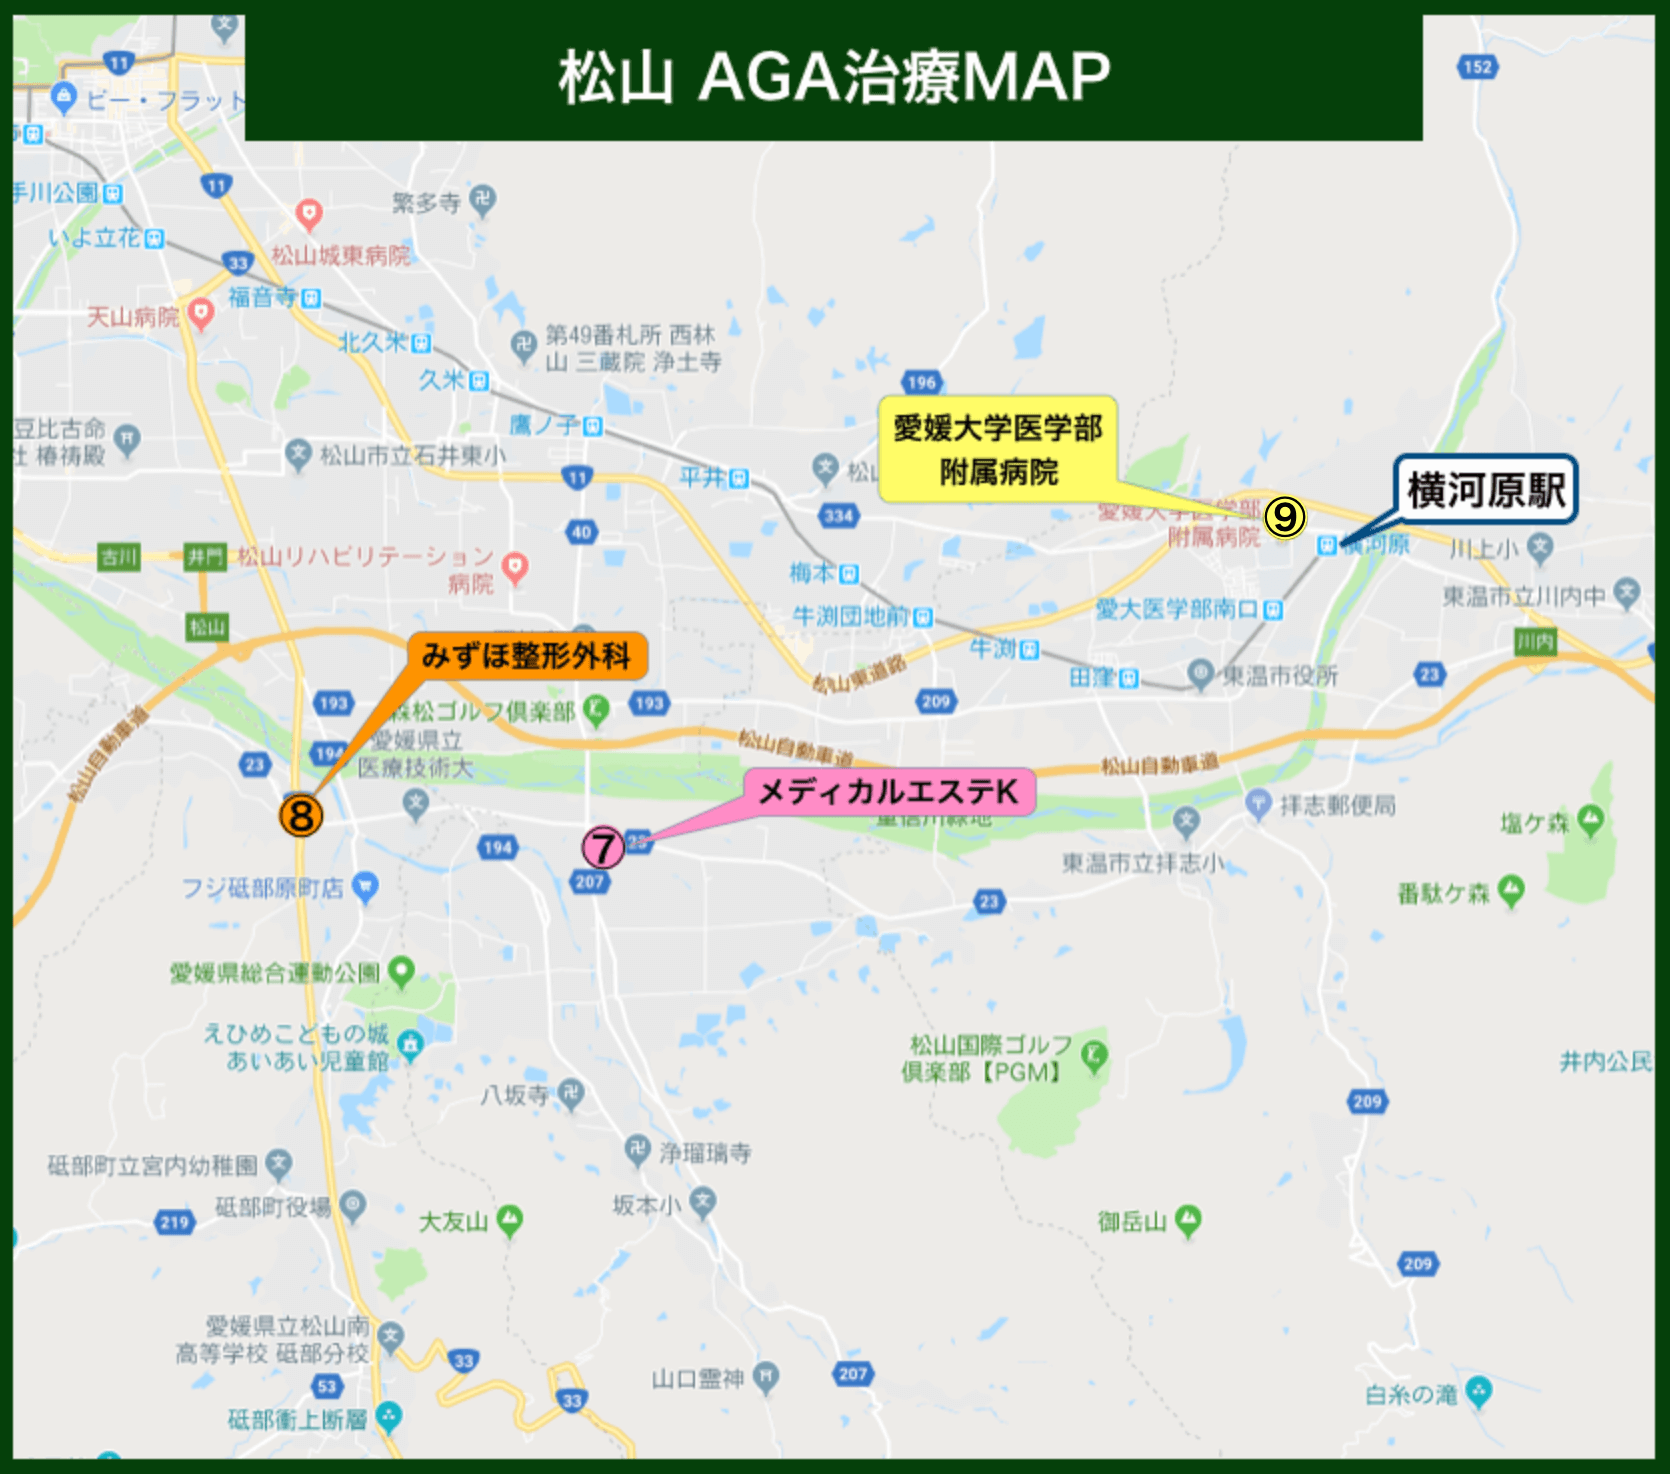 松山 AGA治療MAP